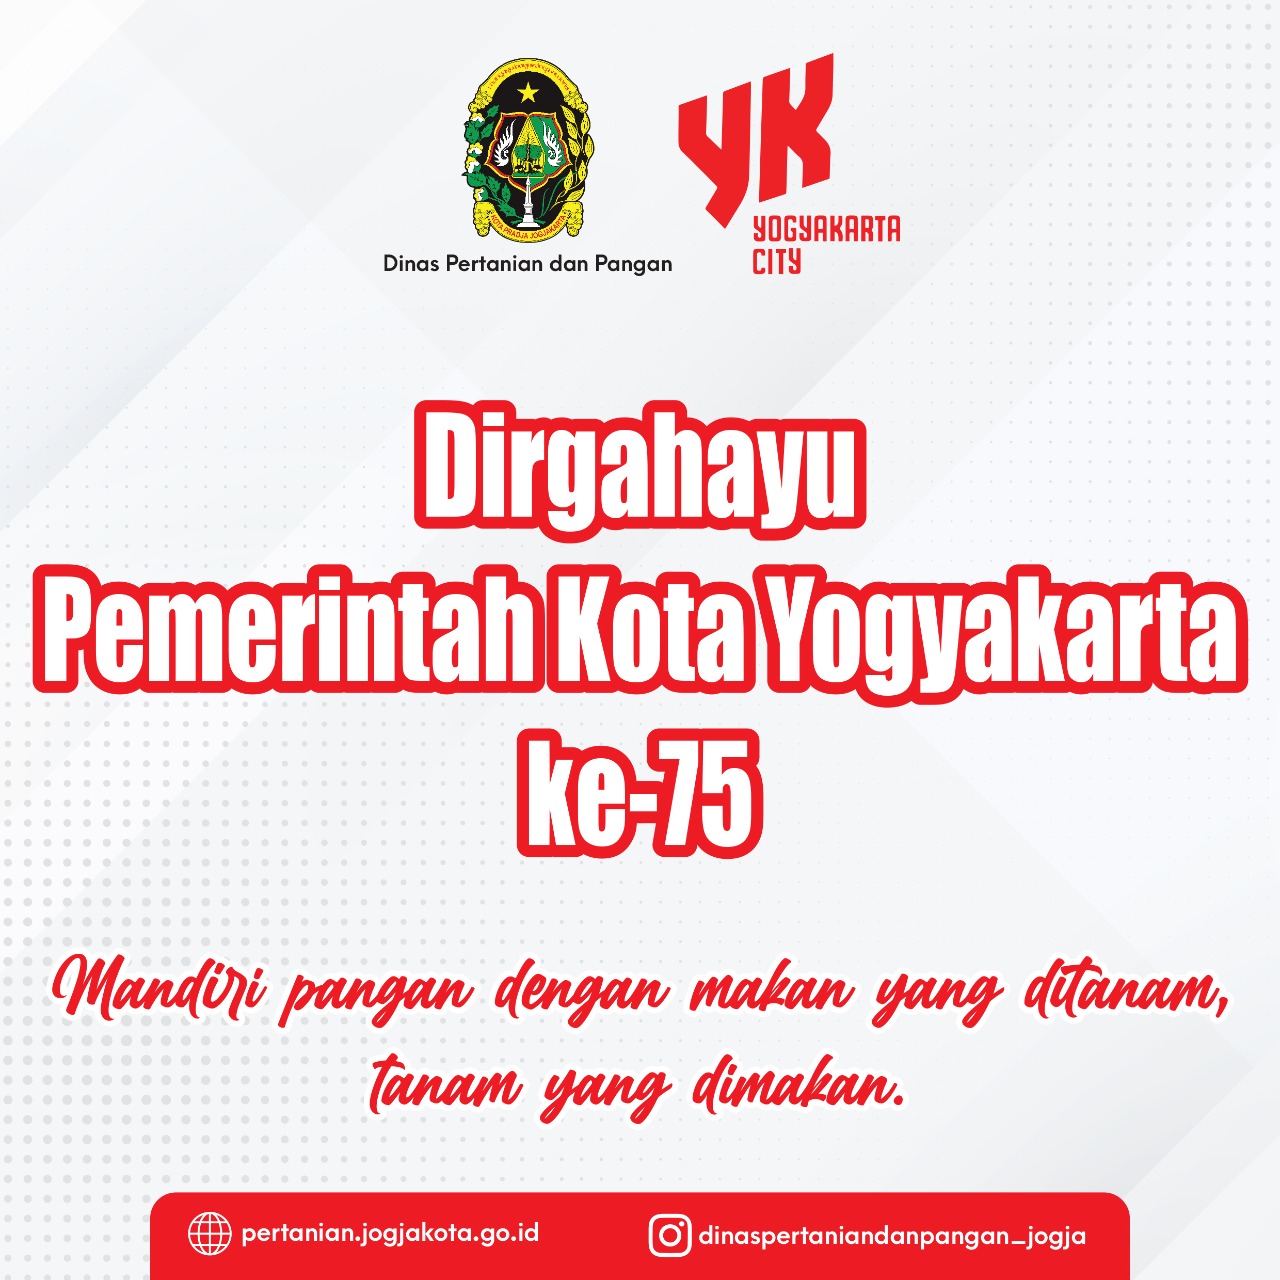 HUT Pemerintah Kota Yogyakarta ke-75